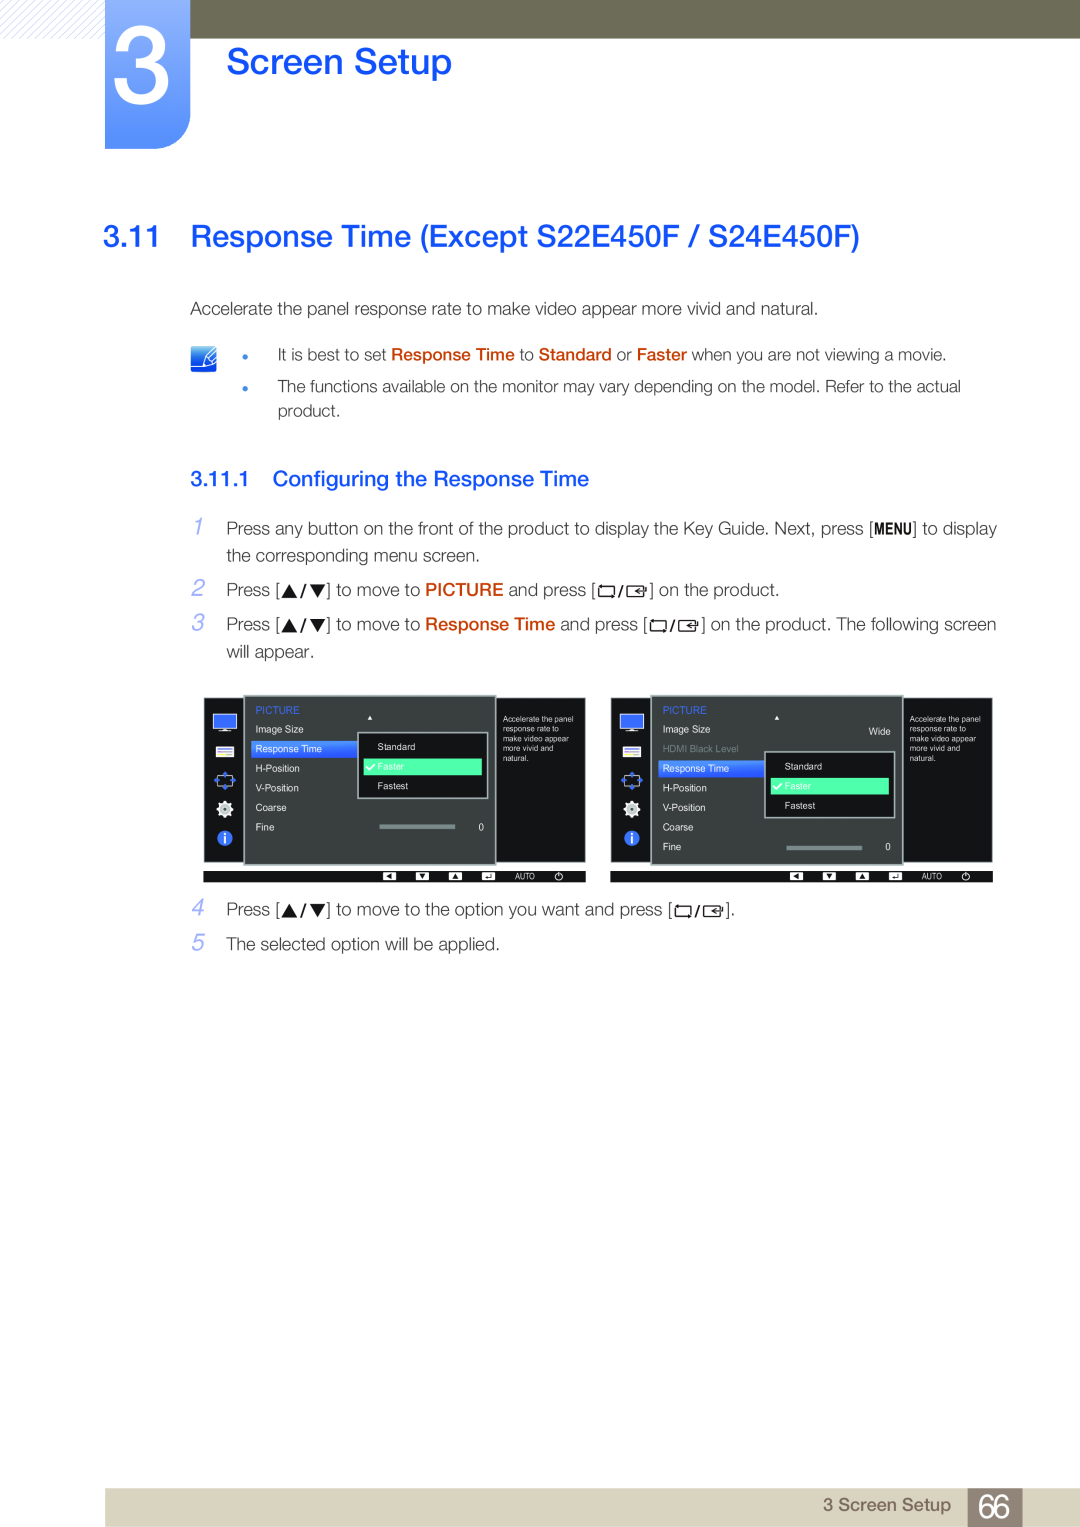 Samsung LS23E65KKS/EN, LS23E65UDC/EN Response Time Except S22E450F / S24E450F, Configuring the Response Time, Screen Setup 